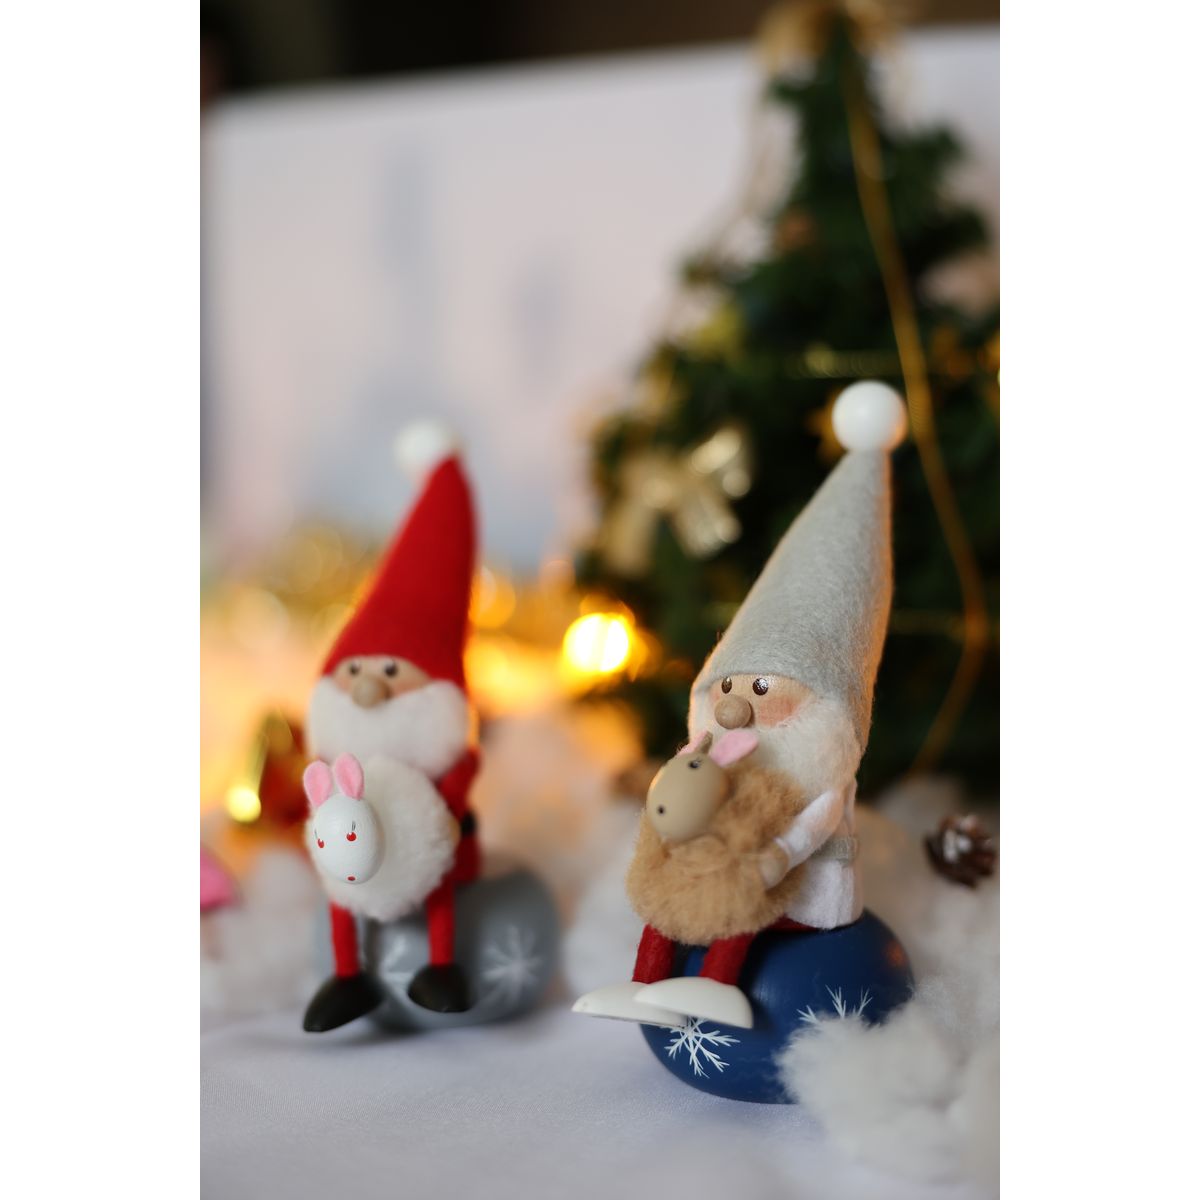 ノルディカ ニッセ クリスマス 木製人形 ウサギを抱えたサンタ サイレントナイト